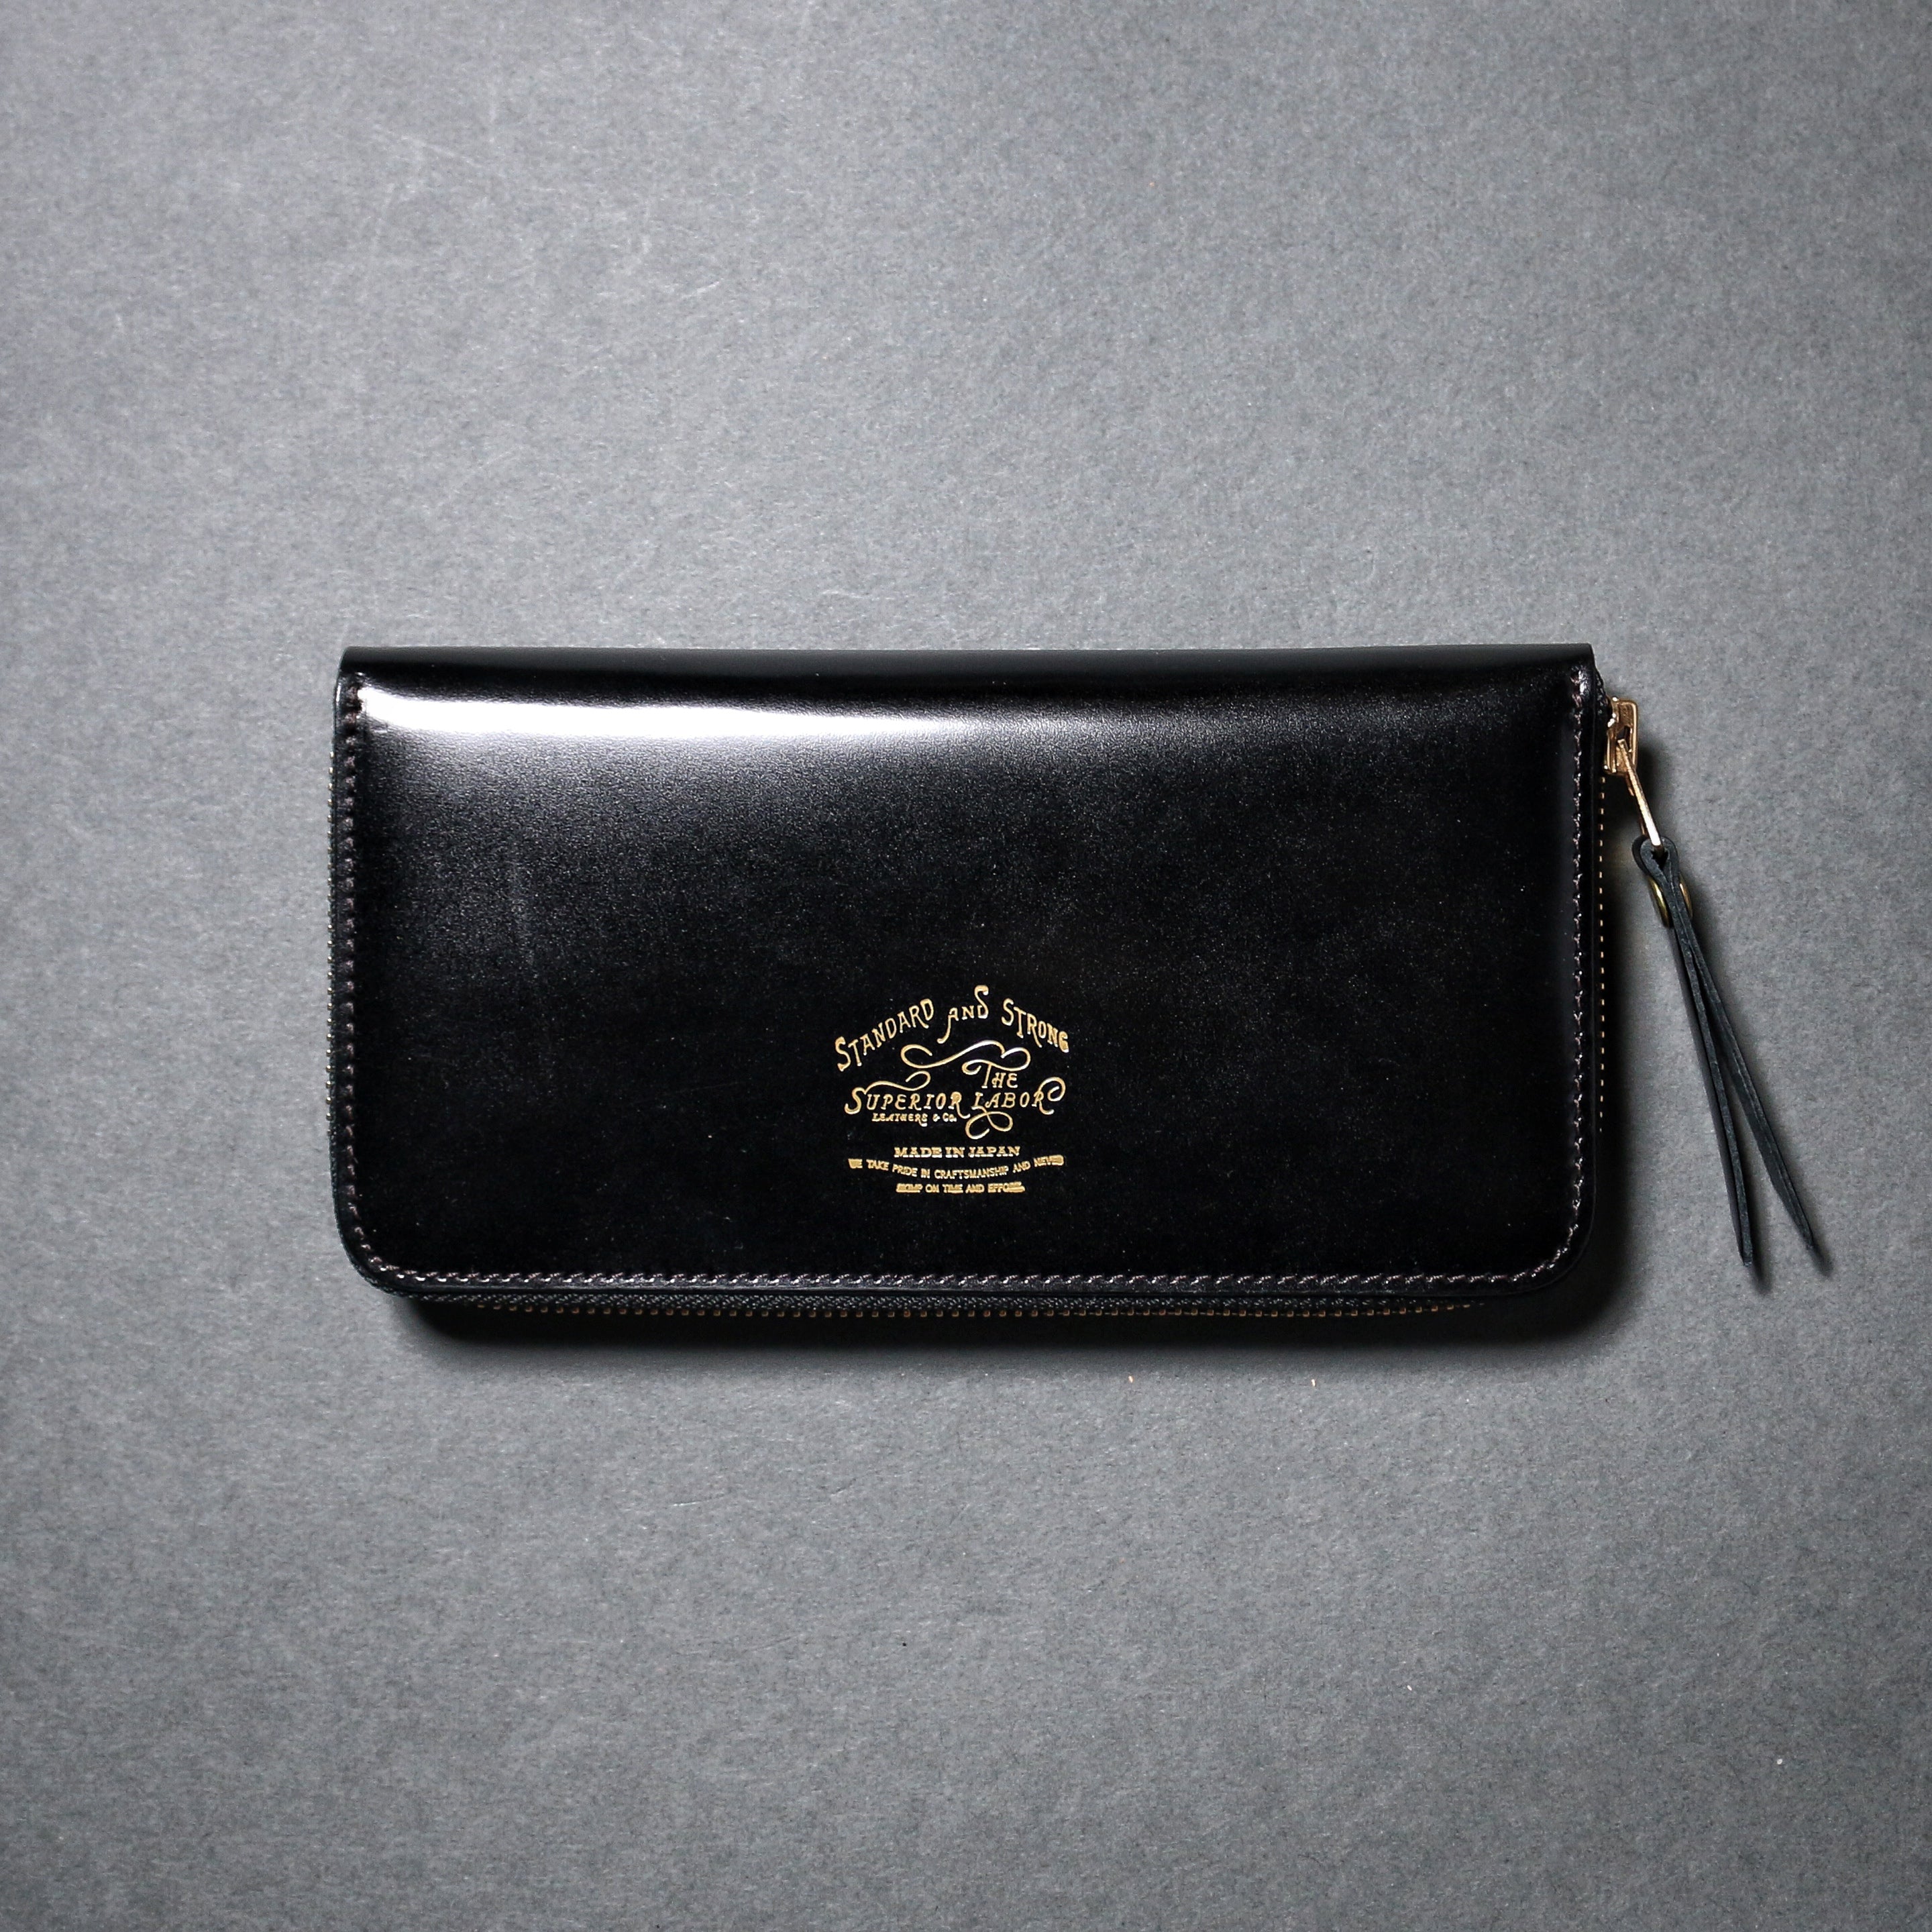 SL191 cordovan zip long wallet